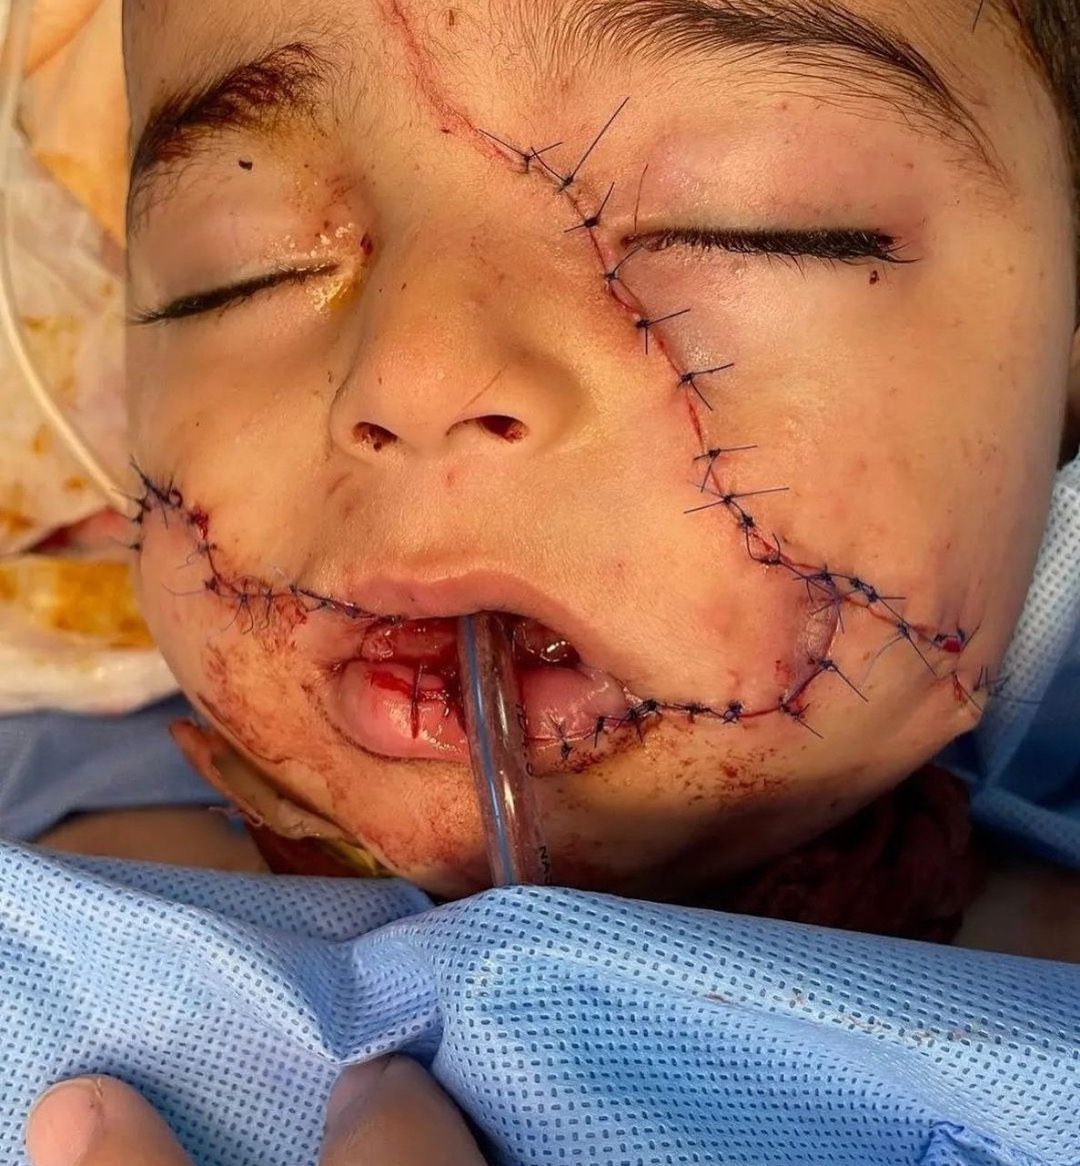 Το Ισραήλ ως σήμερα έχει εξολοθρεύσει πάνω από 15.000 παιδιά στην Γάζα. Δηλαδή 85 παιδιά κάθε μέρα, δεν συγκαταλέγονται τα τραυματισμένα, όπως αυτό της εικόνας. Η ΕΕ συνεχίζει την υποστήριξή της για ένα εκτός ελέγχου δολοφονικό κράτος.